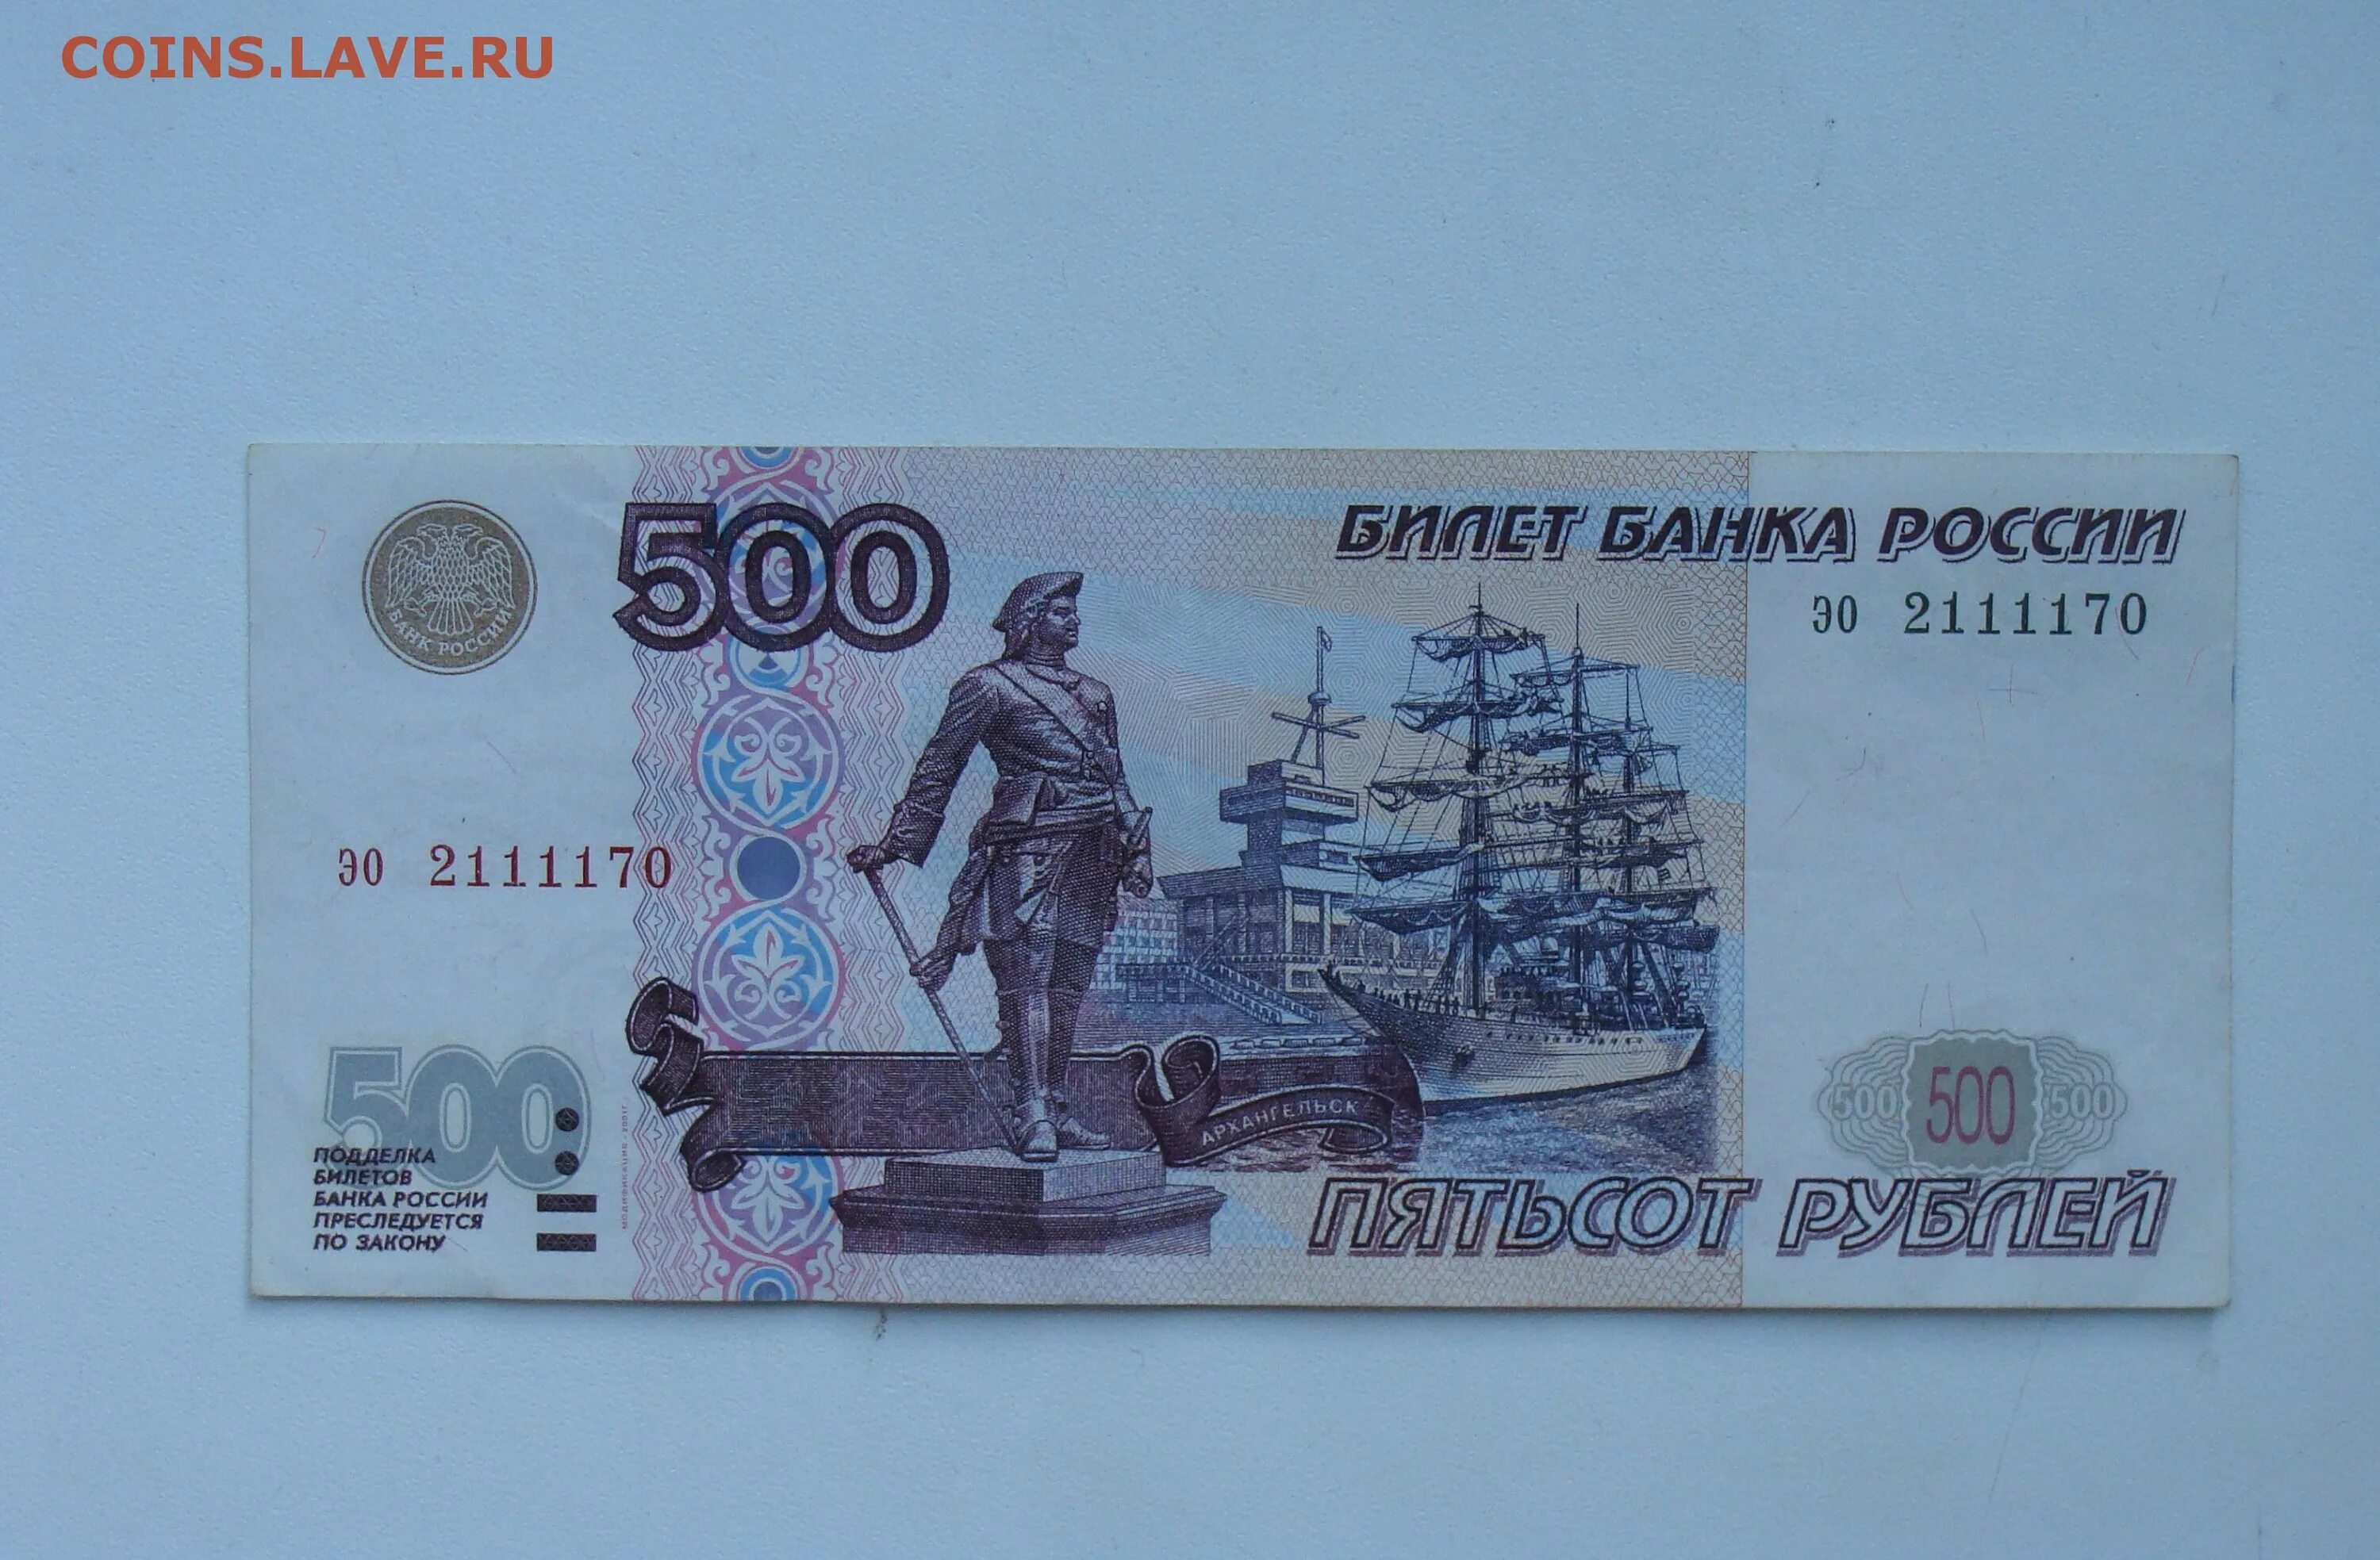 500 Рублей 1997 года без модификации. 500 Рублей 1997 модификация 2001. Купюра 500 рублей модификации 2001 года. Купюра 500 рублей 2001 года.